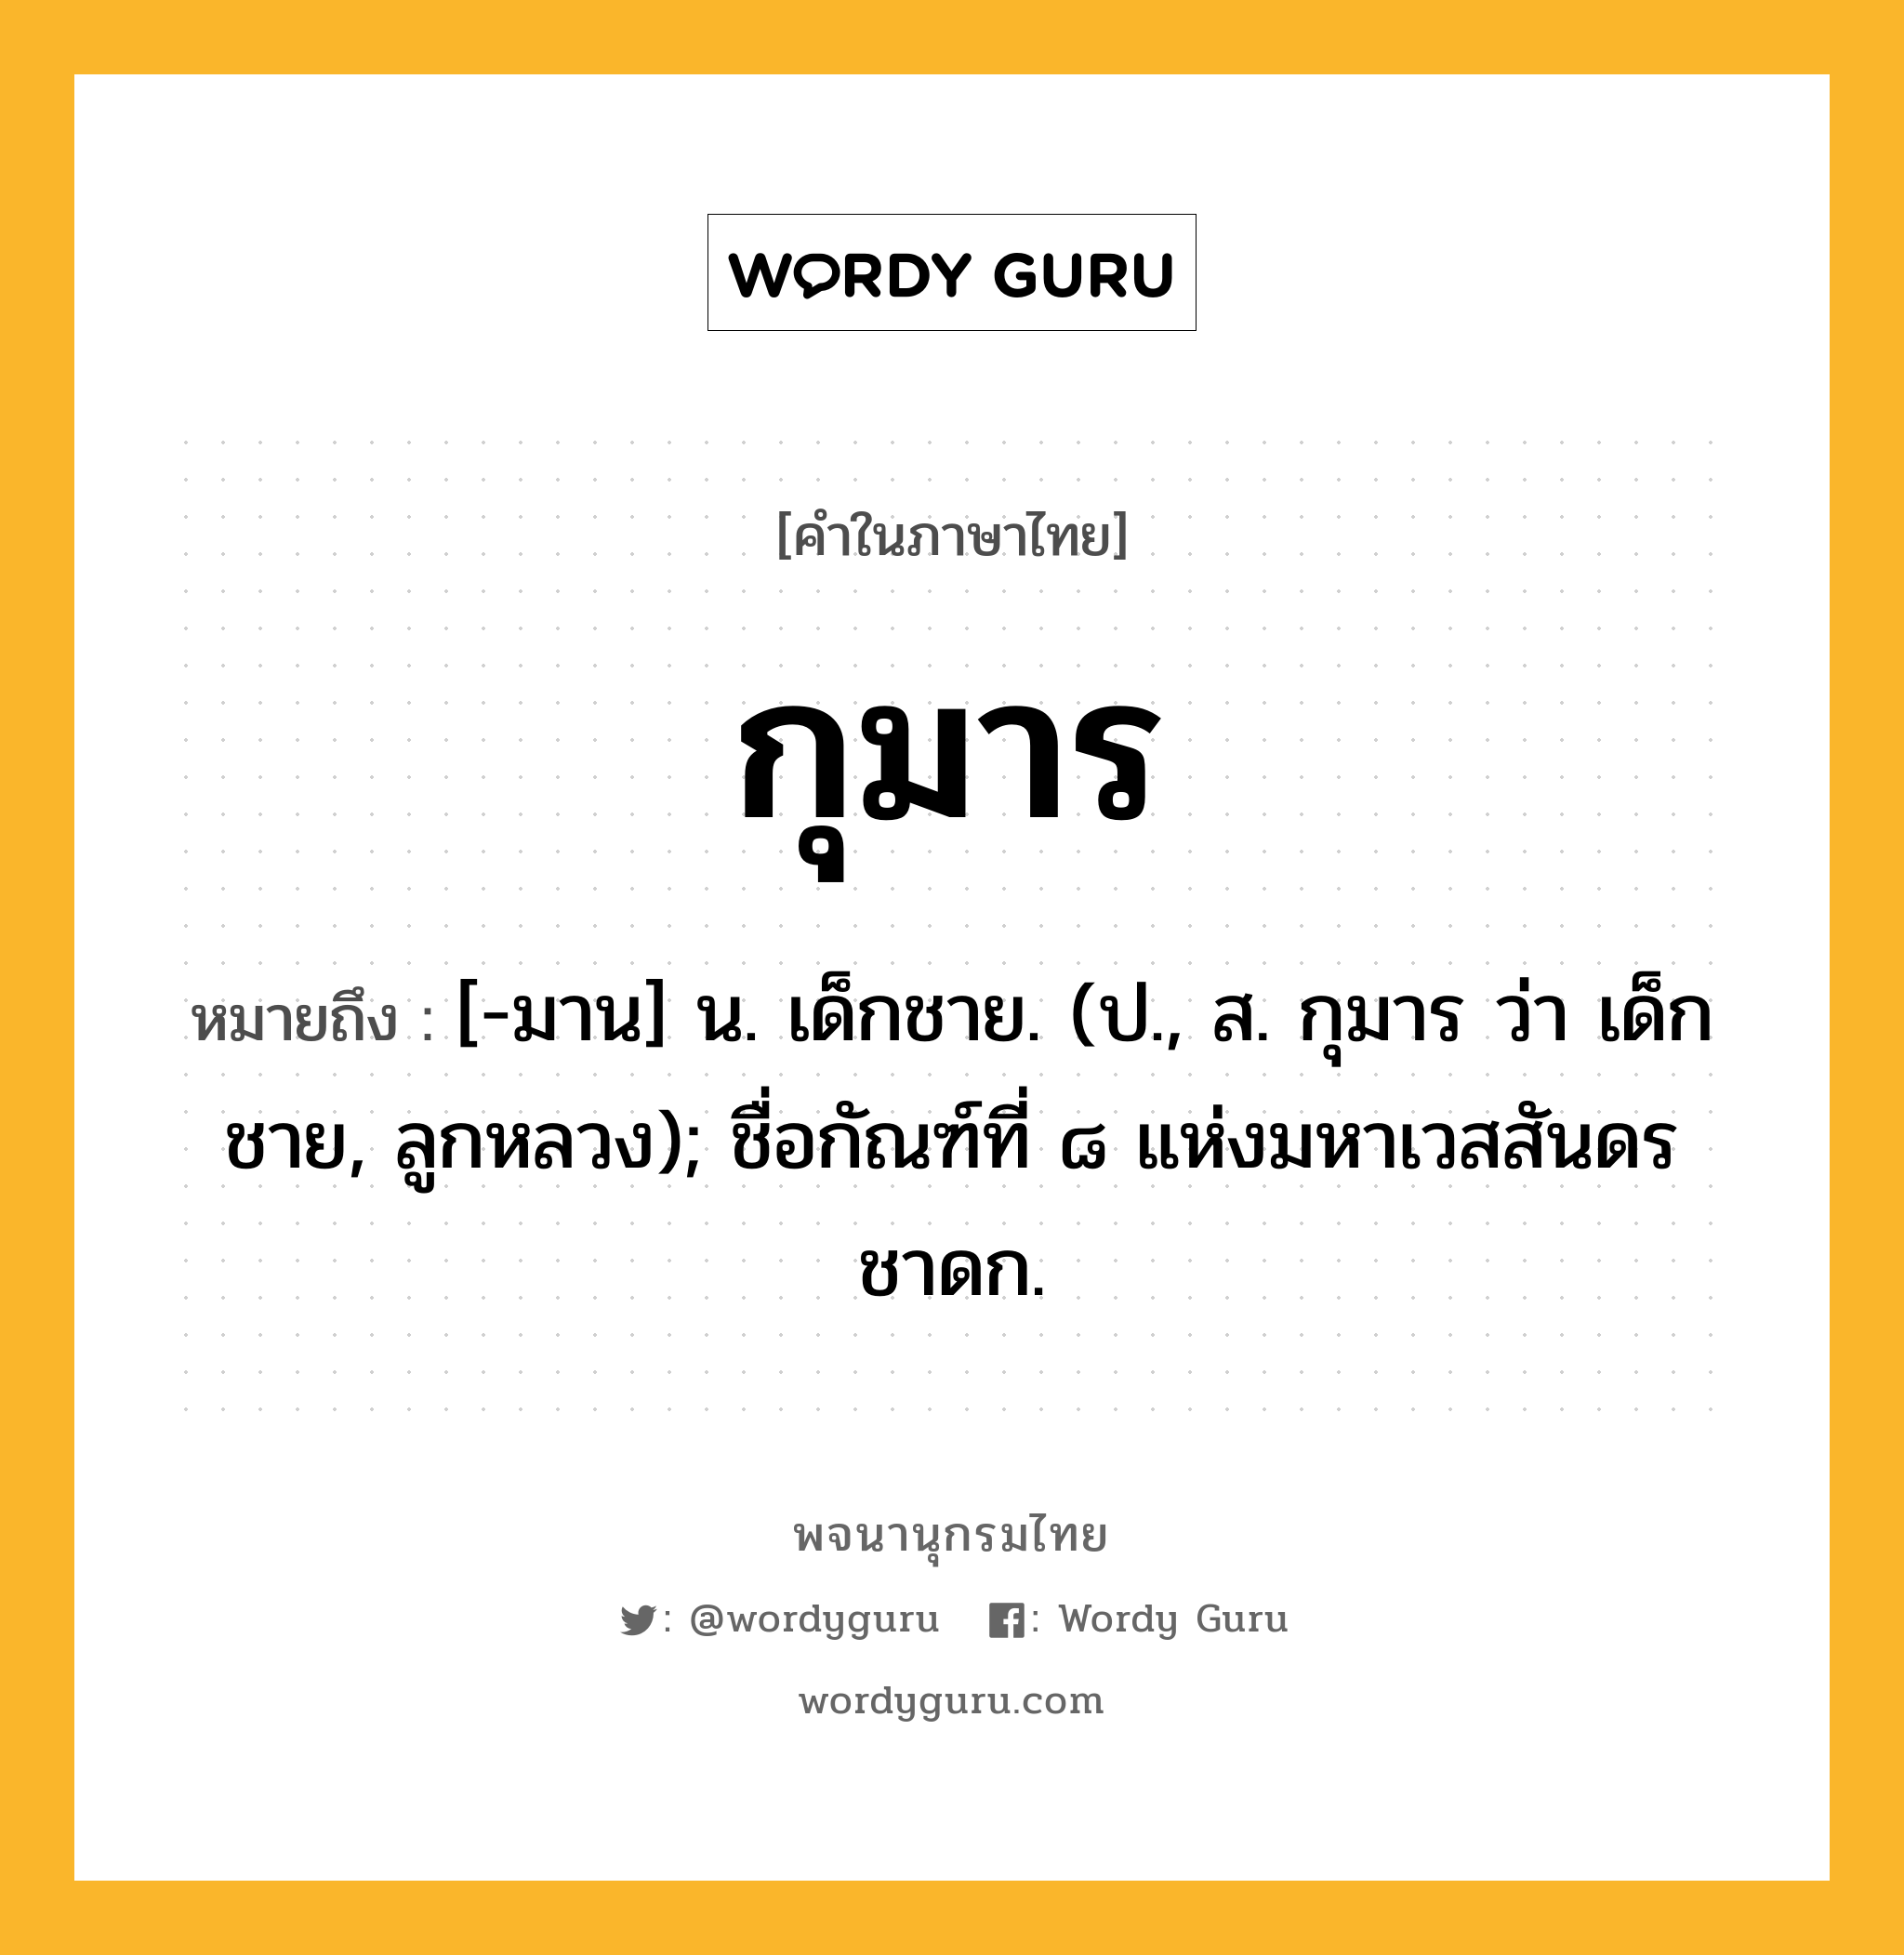 กุมาร หมายถึงอะไร?, คำในภาษาไทย กุมาร หมายถึง [-มาน] น. เด็กชาย. (ป., ส. กุมาร ว่า เด็กชาย, ลูกหลวง); ชื่อกัณฑ์ที่ ๘ แห่งมหาเวสสันดรชาดก.